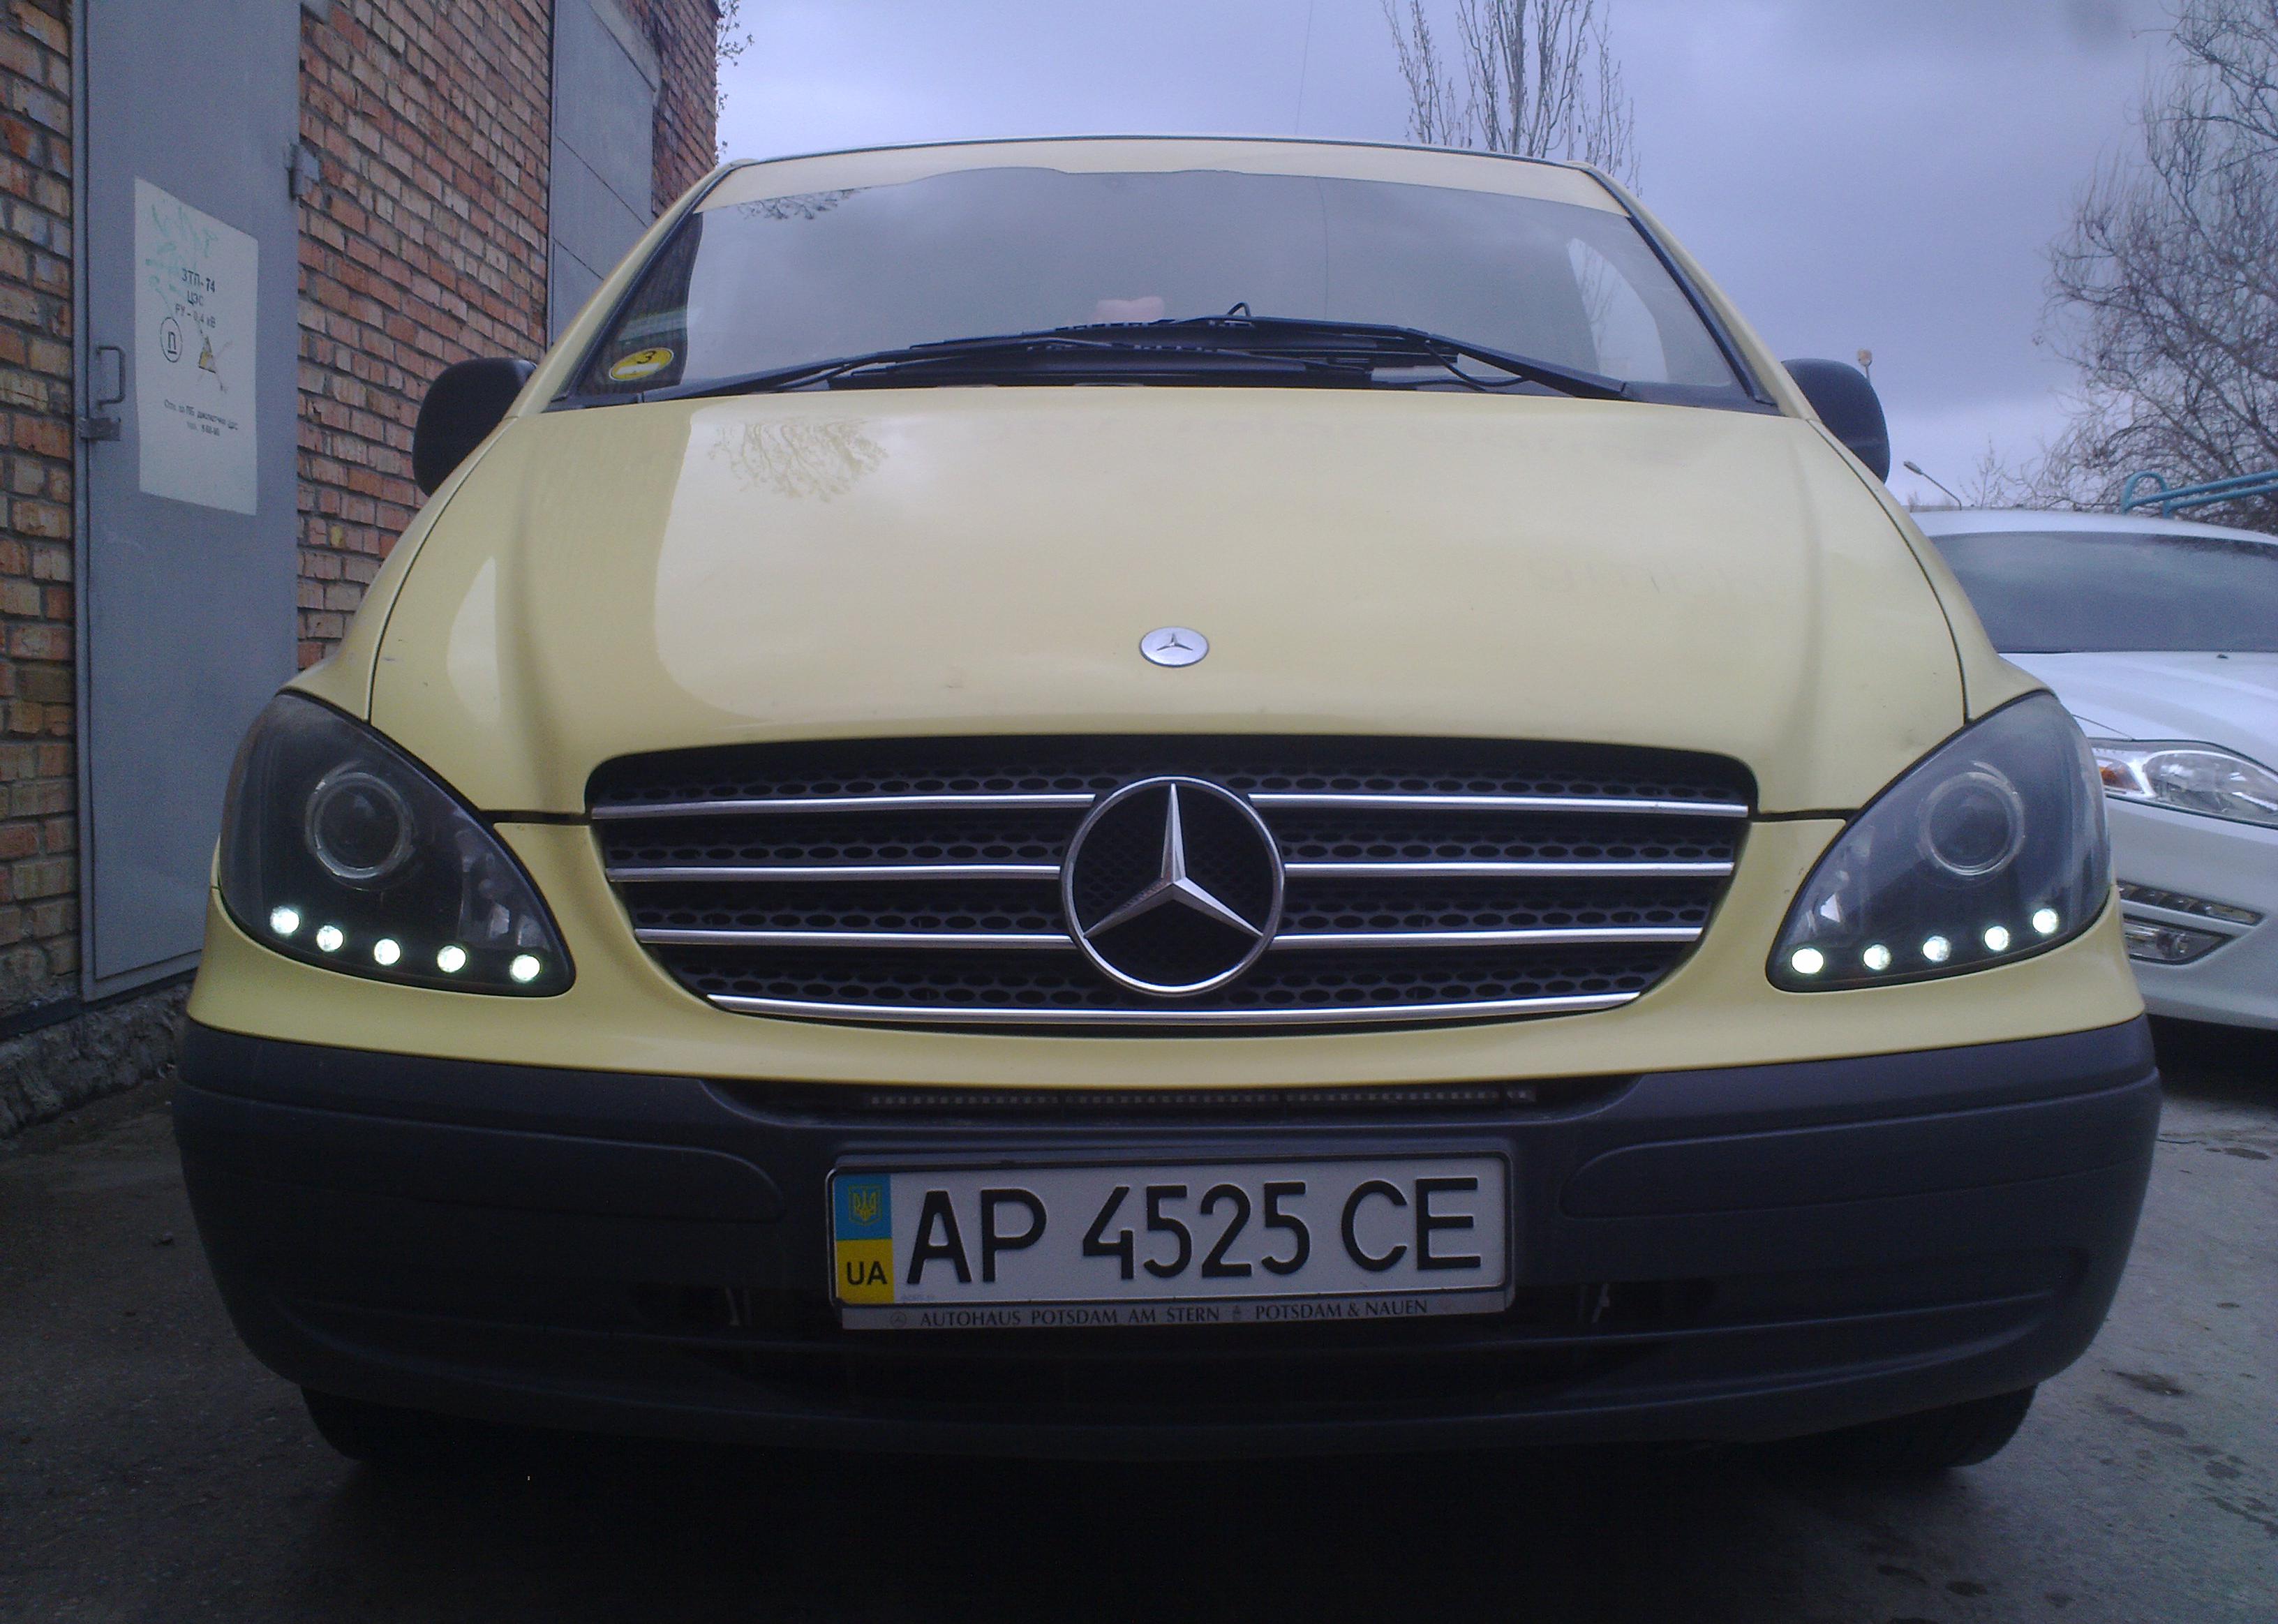 Mercedes-Benz Vito (W639)